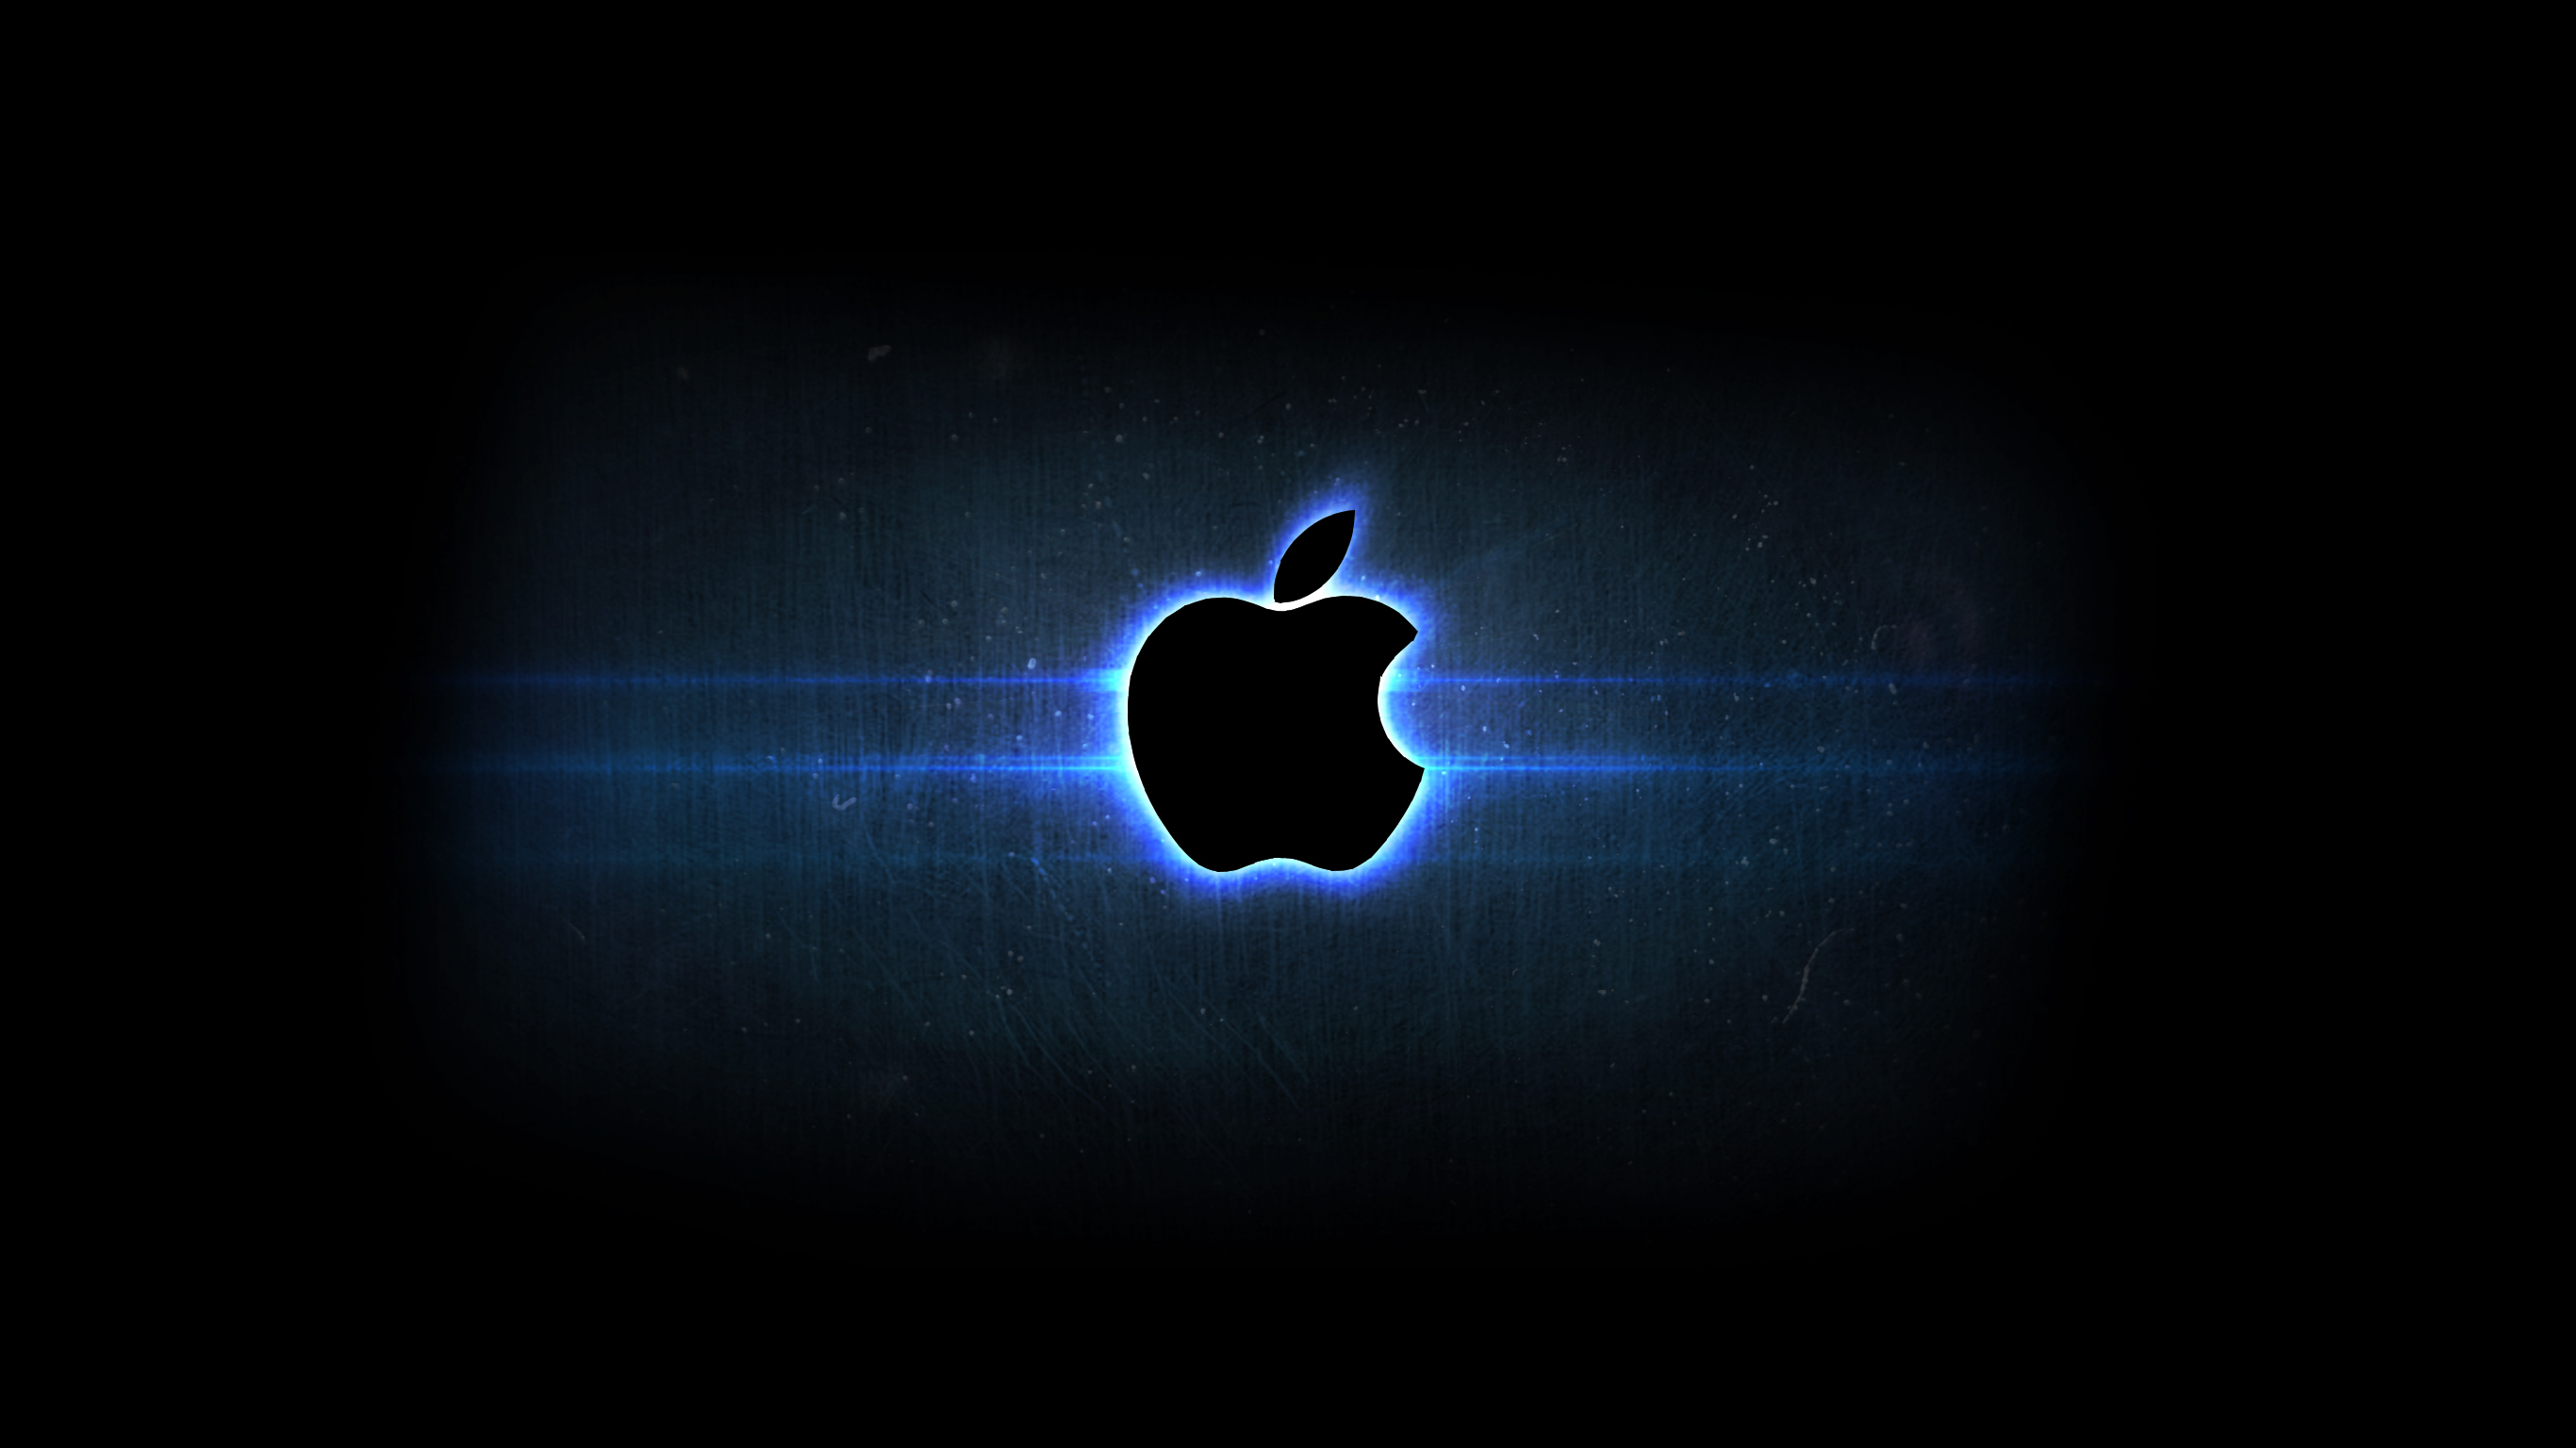 Hình nền táo: Hình nền táo là sự kết hợp hoàn hảo giữa độ sáng tạo và thiết kế độc đáo của Apple. Với màu sắc tươi tắn và chất lượng hình ảnh được tăng cường, hình nền táo sẽ làm cho màn hình của bạn trở nên tinh tế và đẹp mắt hơn. Nhấn mạnh vào hình nền và khám phá thế giới tuyệt vời của Apple!